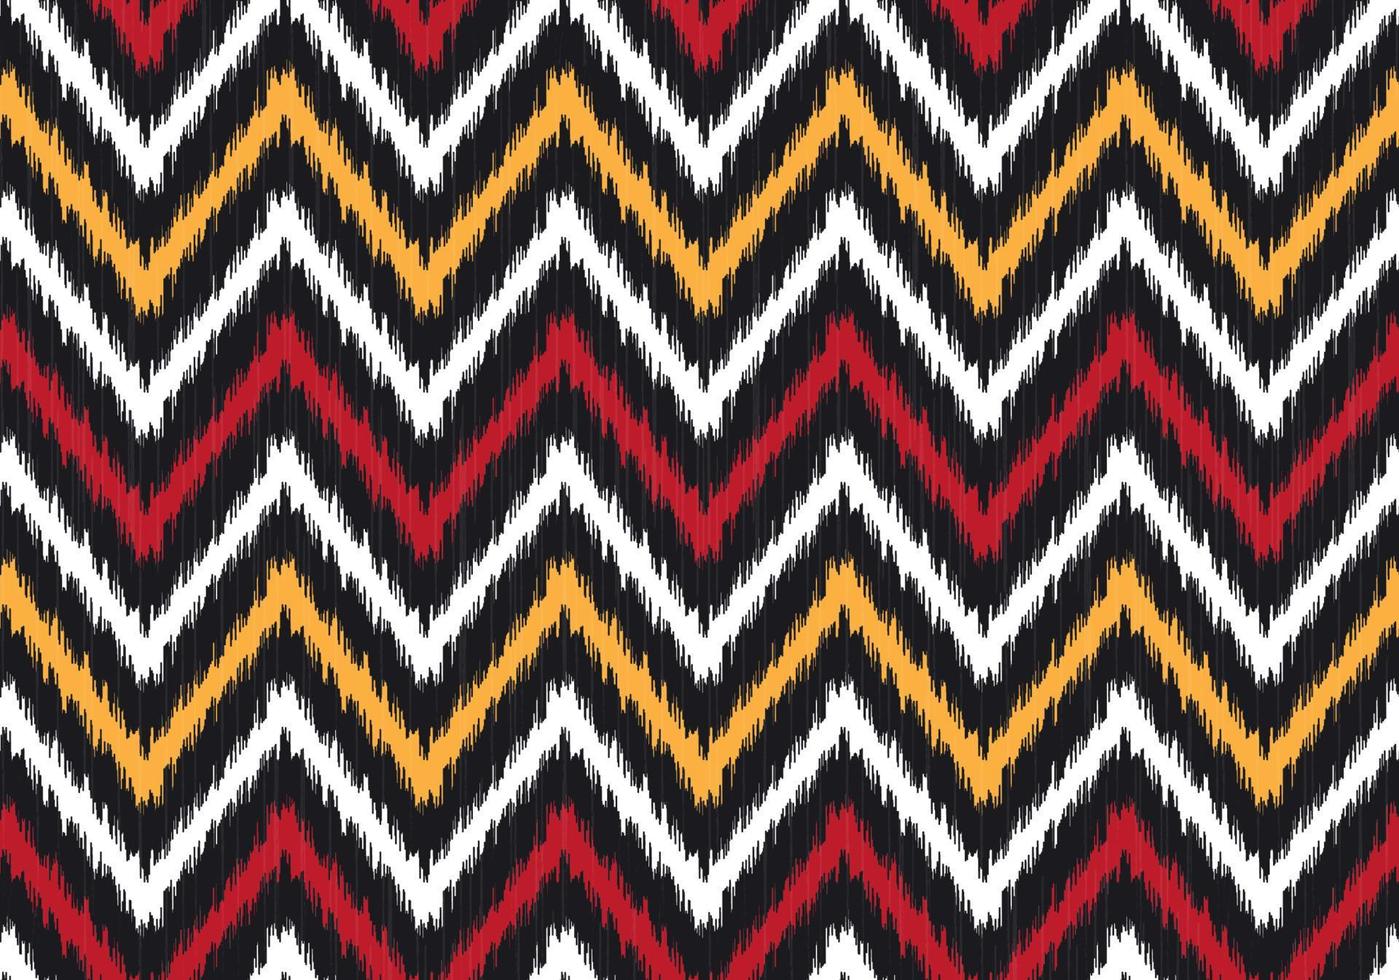 moderno ikat zig zag ou forma geométrica chevron com fundo vermelho, amarelo sem costura. uso para tecidos, têxteis, elementos de decoração. vetor